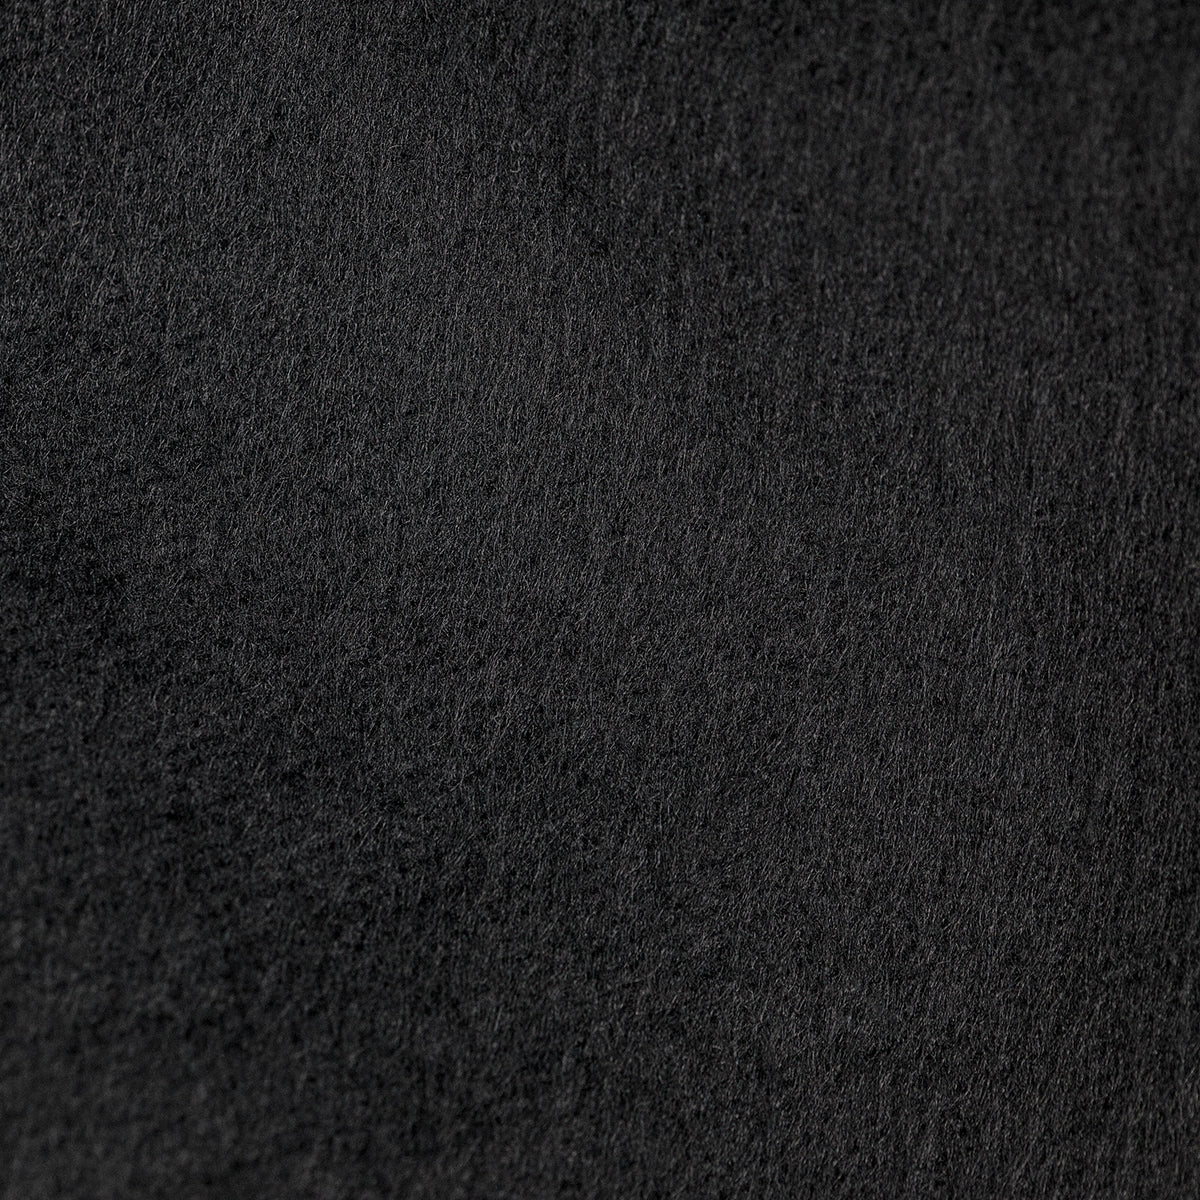 Scrim Jim Cine Unbleached Muslin/Black Fabric (6' x 6')